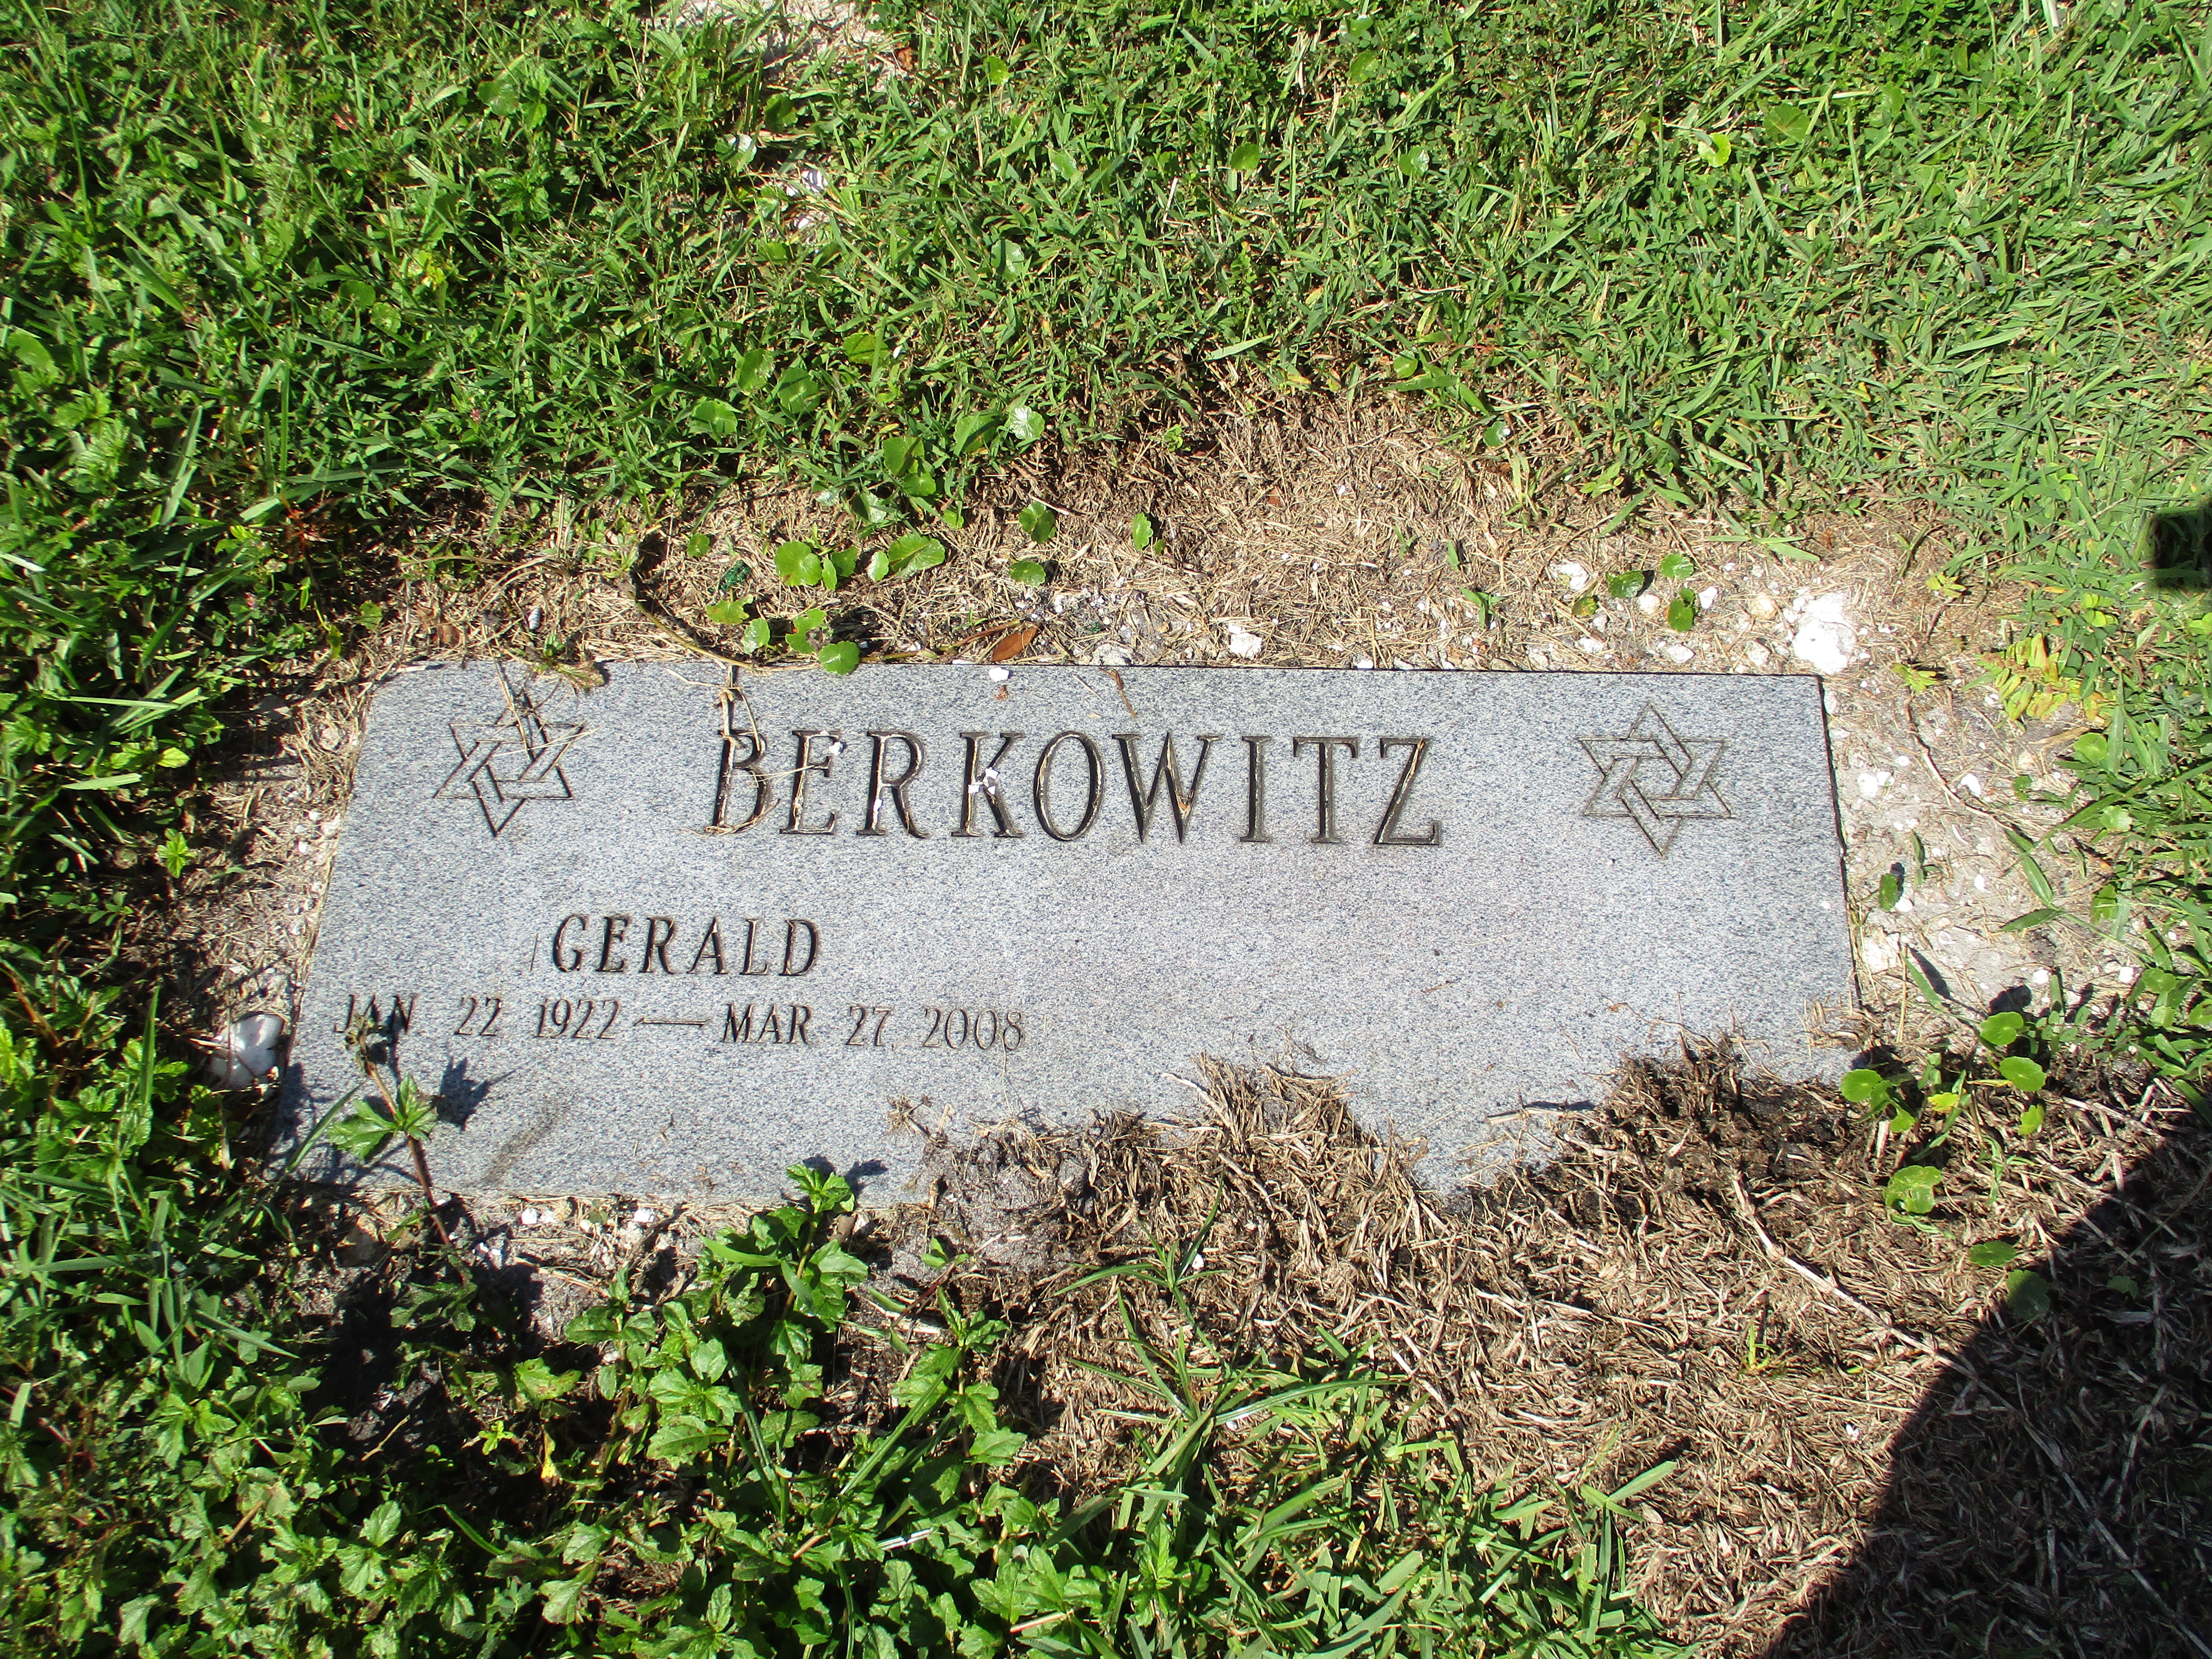 Gerald Berkowitz